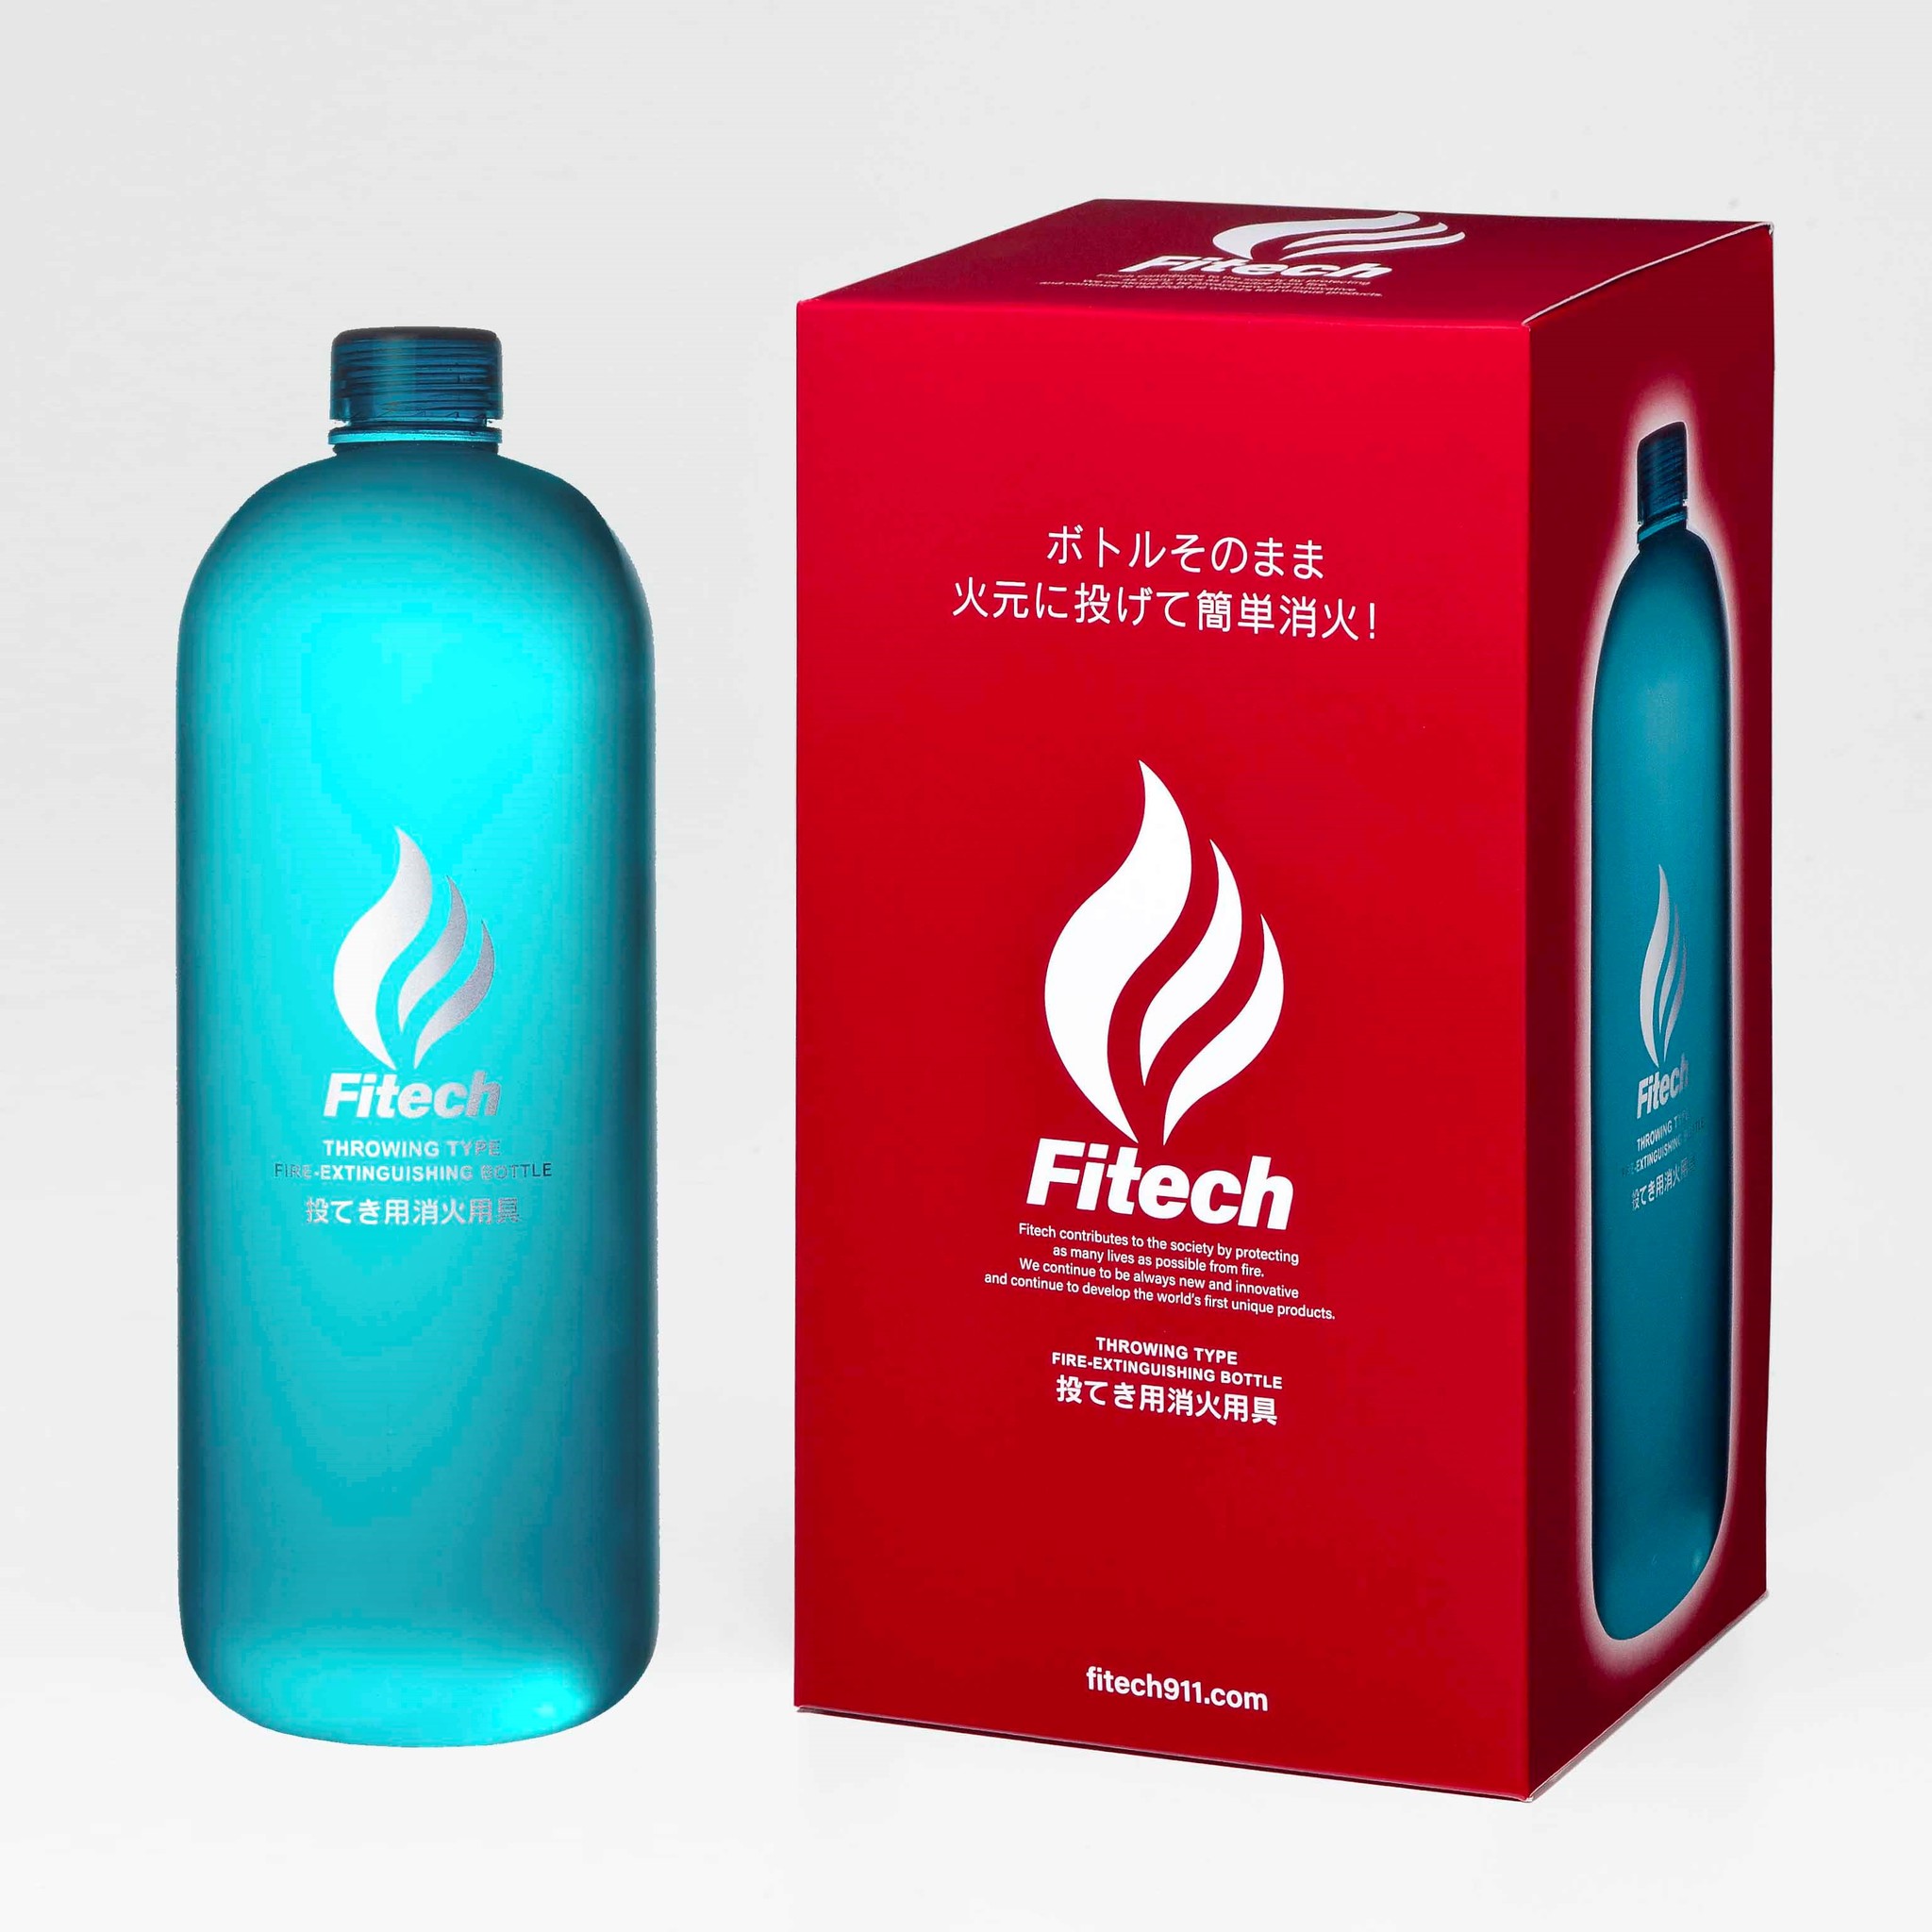 Fitech/ファイテック 投てき用簡易消火用具-